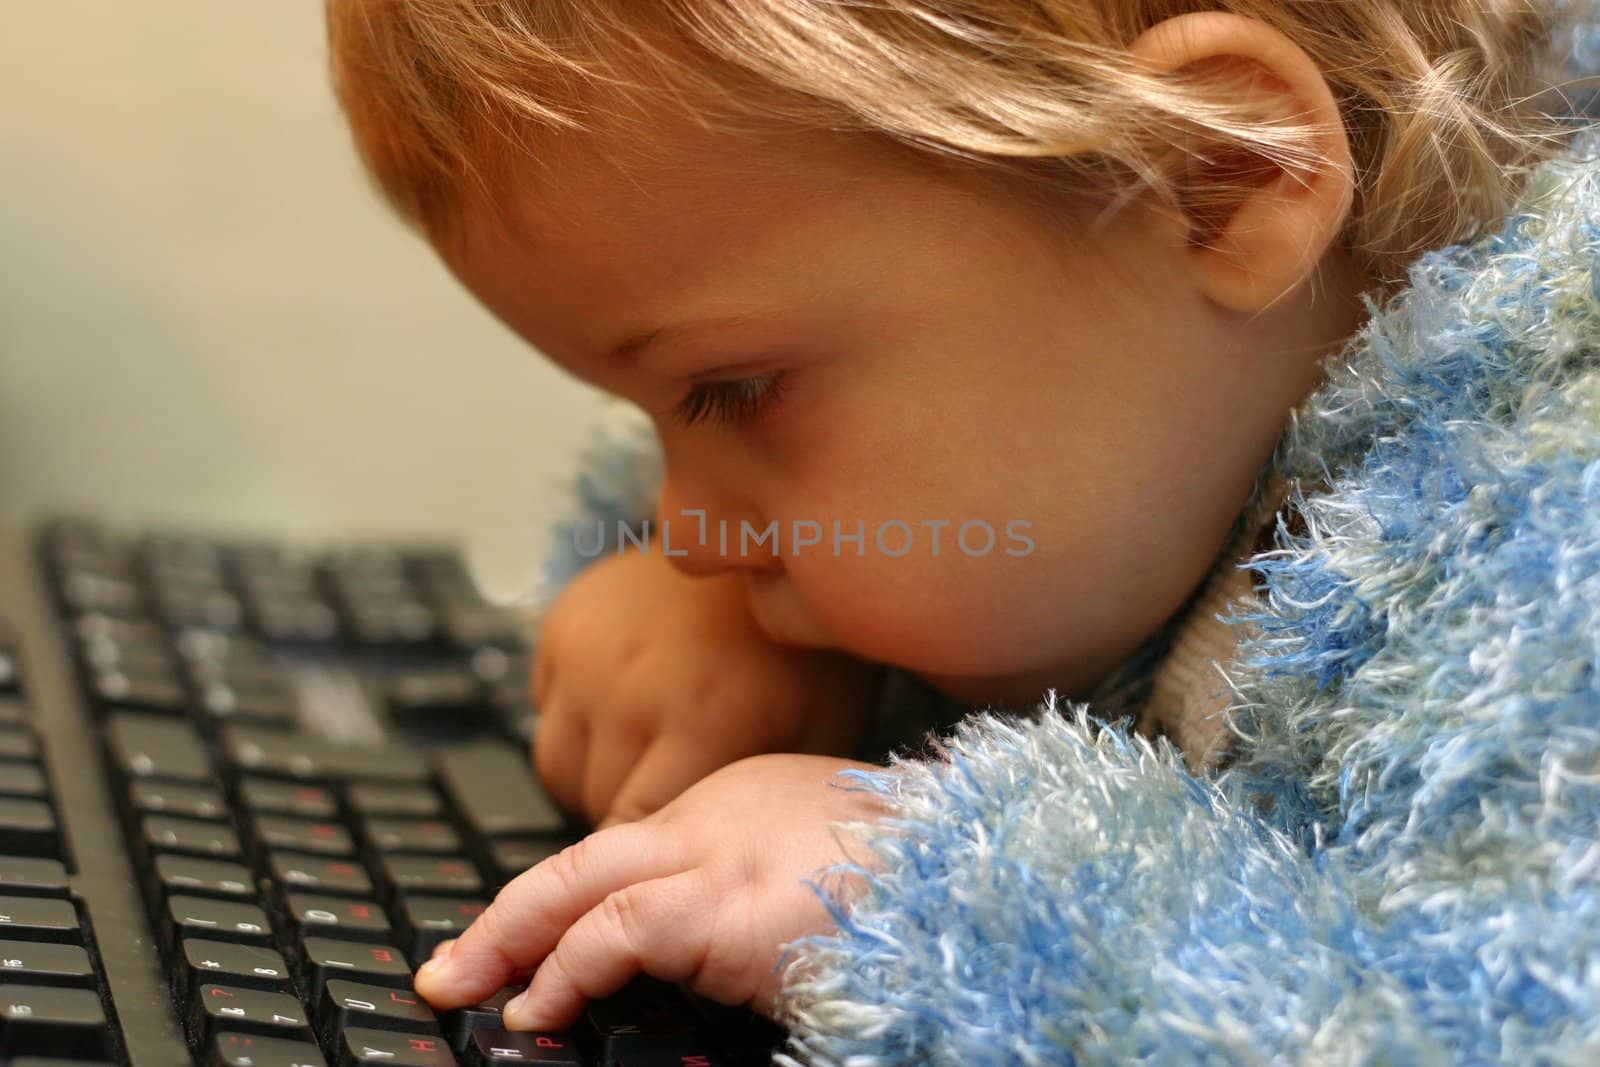 The little boy considers keys of the keyboard